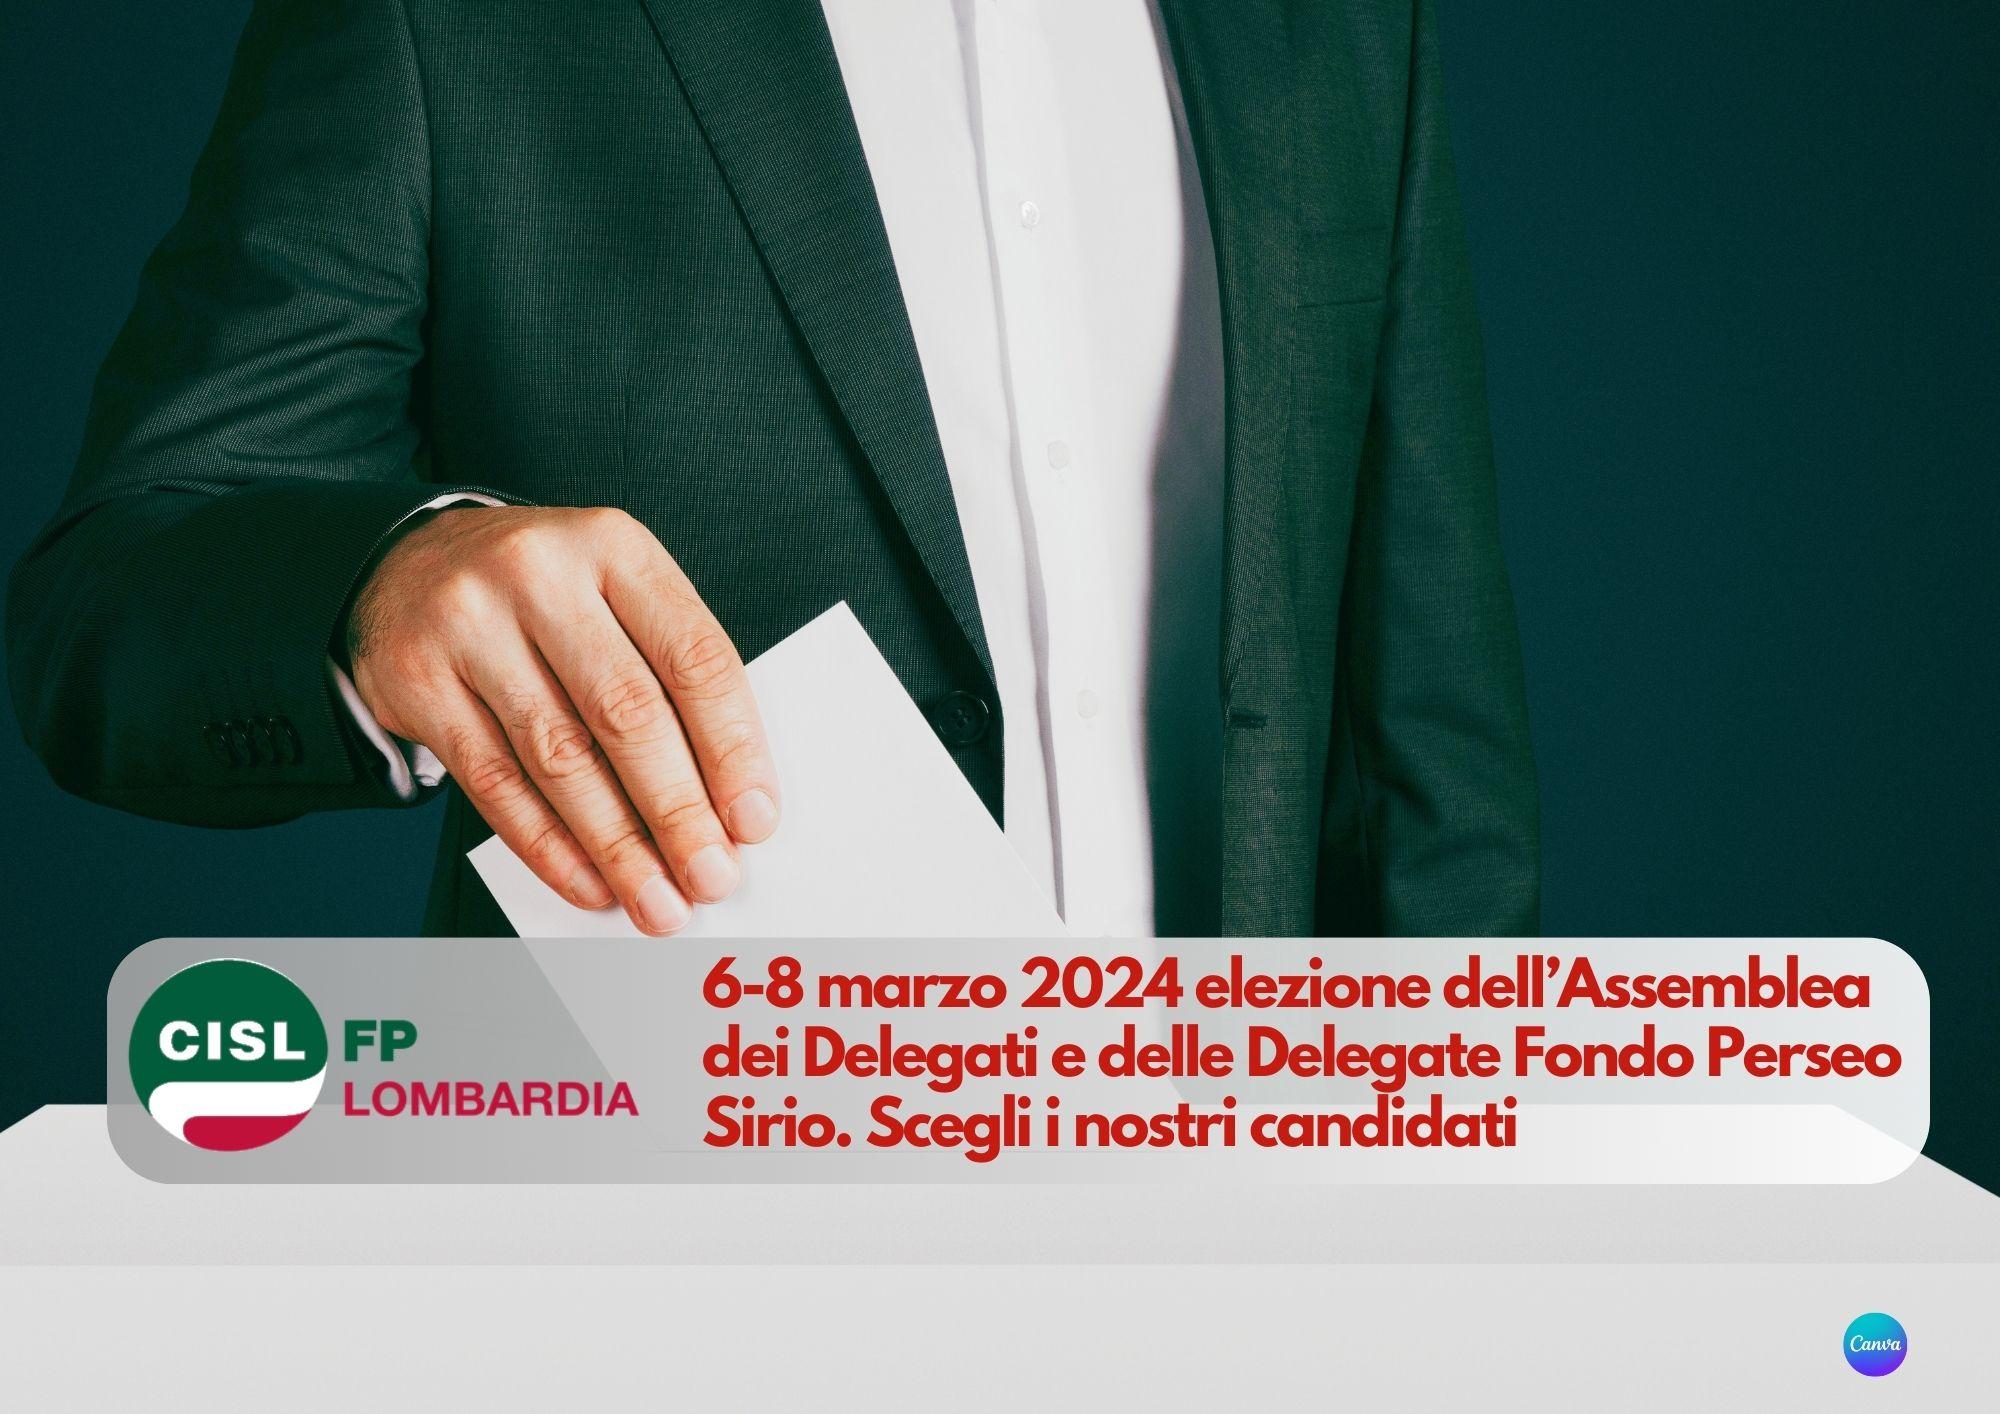 CISL FP Lombardia. 6-8 marzo 2024 elezione dell’Assemblea dei Delegati e delle Delegate Fondo Perseo Sirio